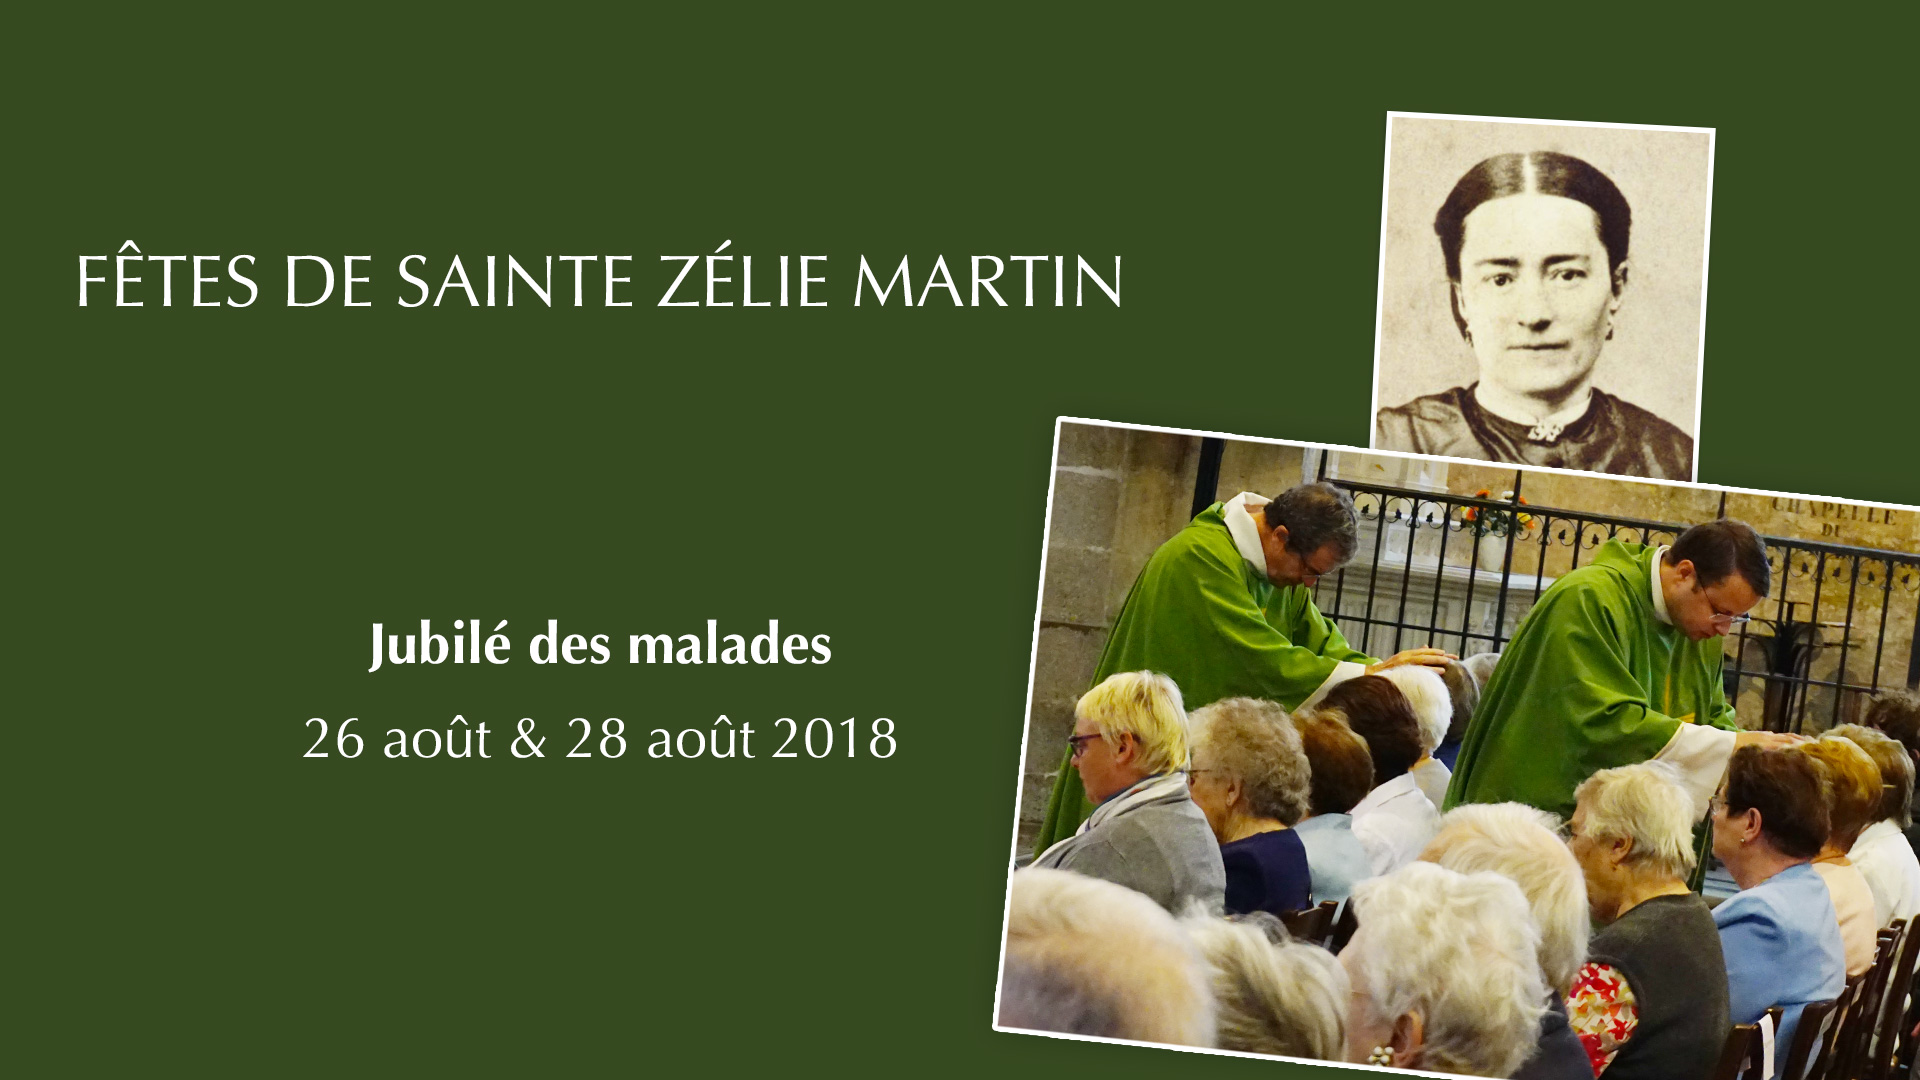 Fêtes de sainte Zélie Martin – Jubilé des malades les 26 et 28 août 2018 au Sanctuaire d’Alençon (61)